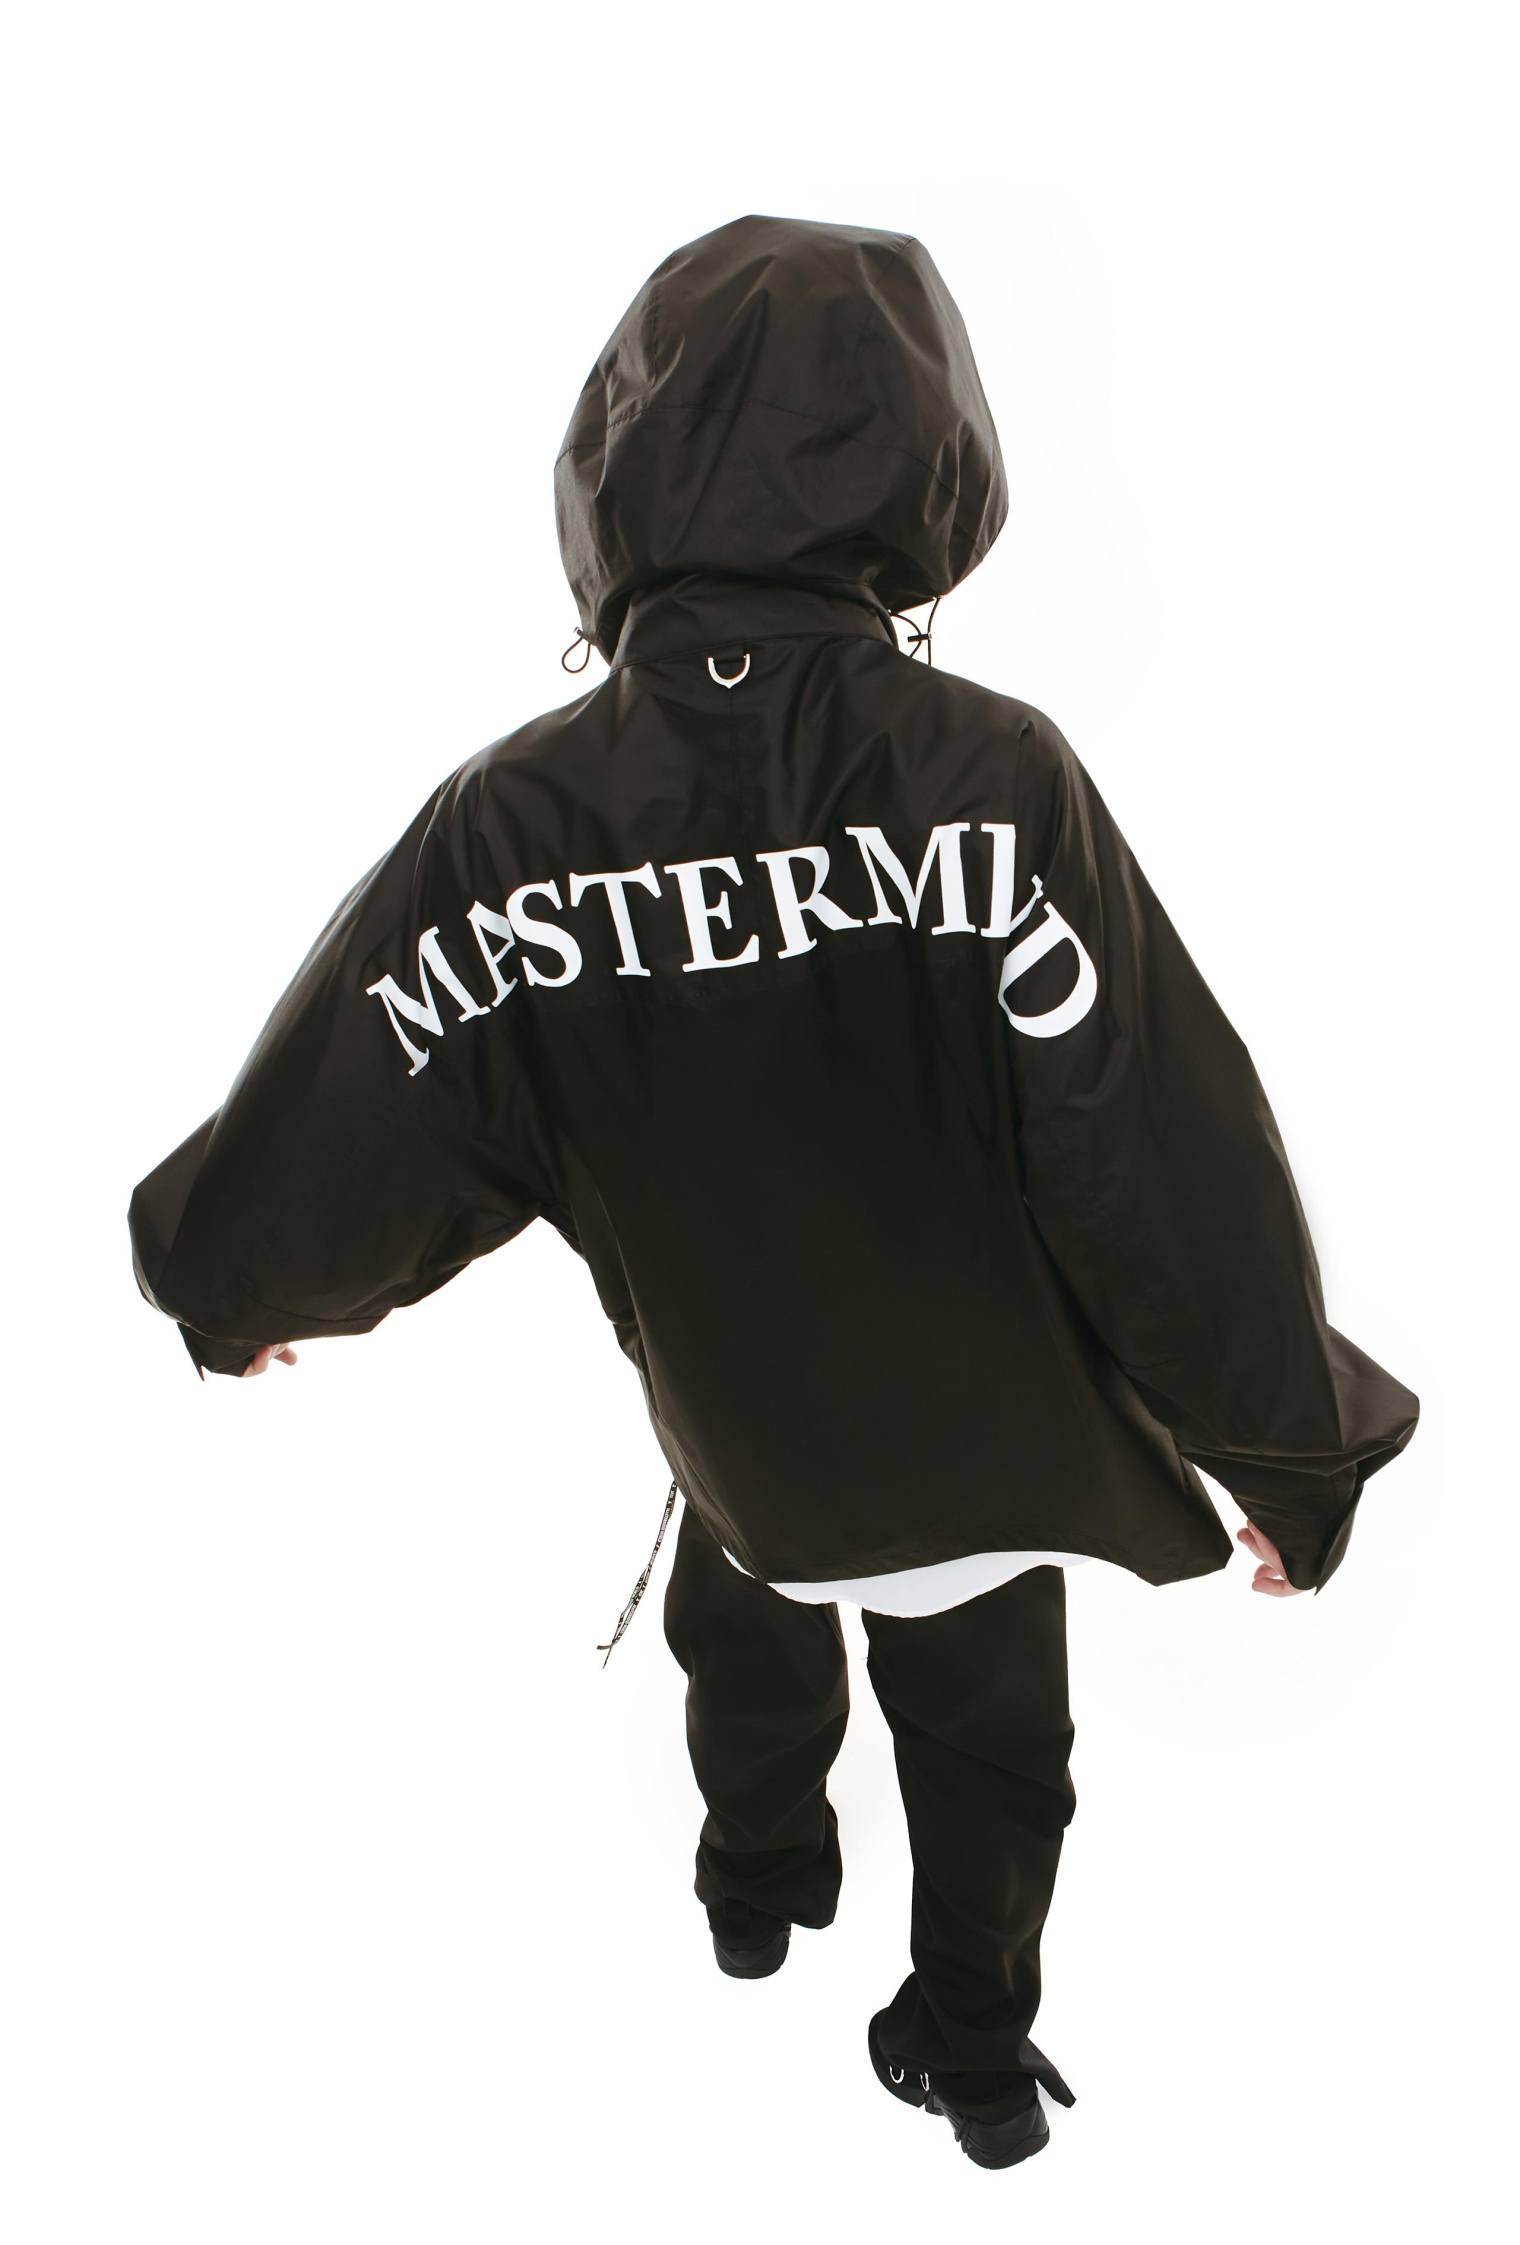 Mastermind WORLD Nylon Logo jacket